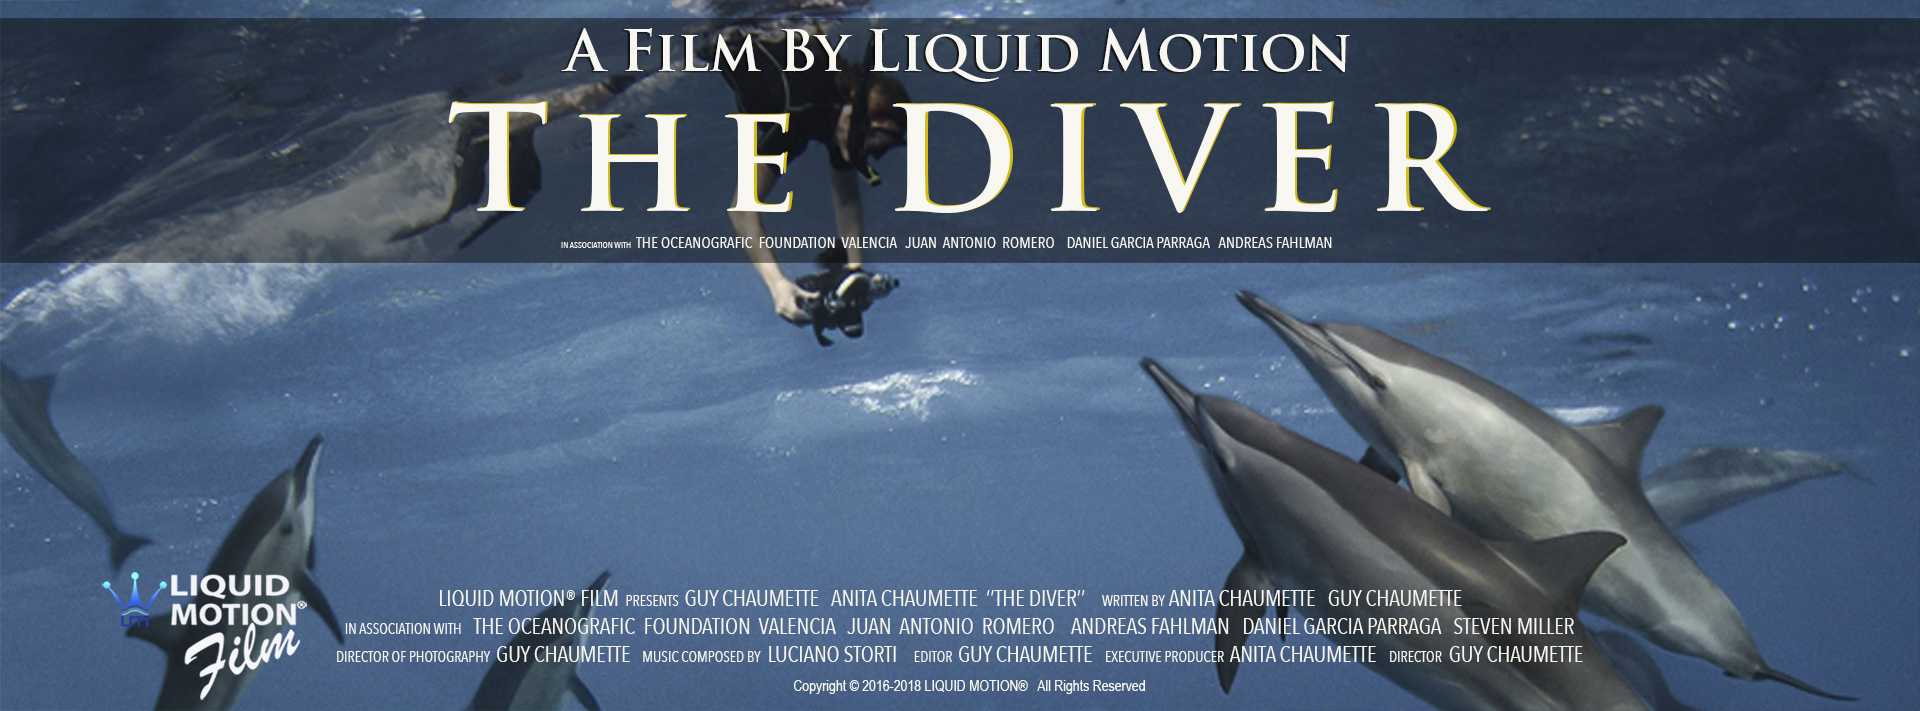 Liquid Motion Film The Diver - http://liquidmotionfilm.com/Films-THE-DIVER.html